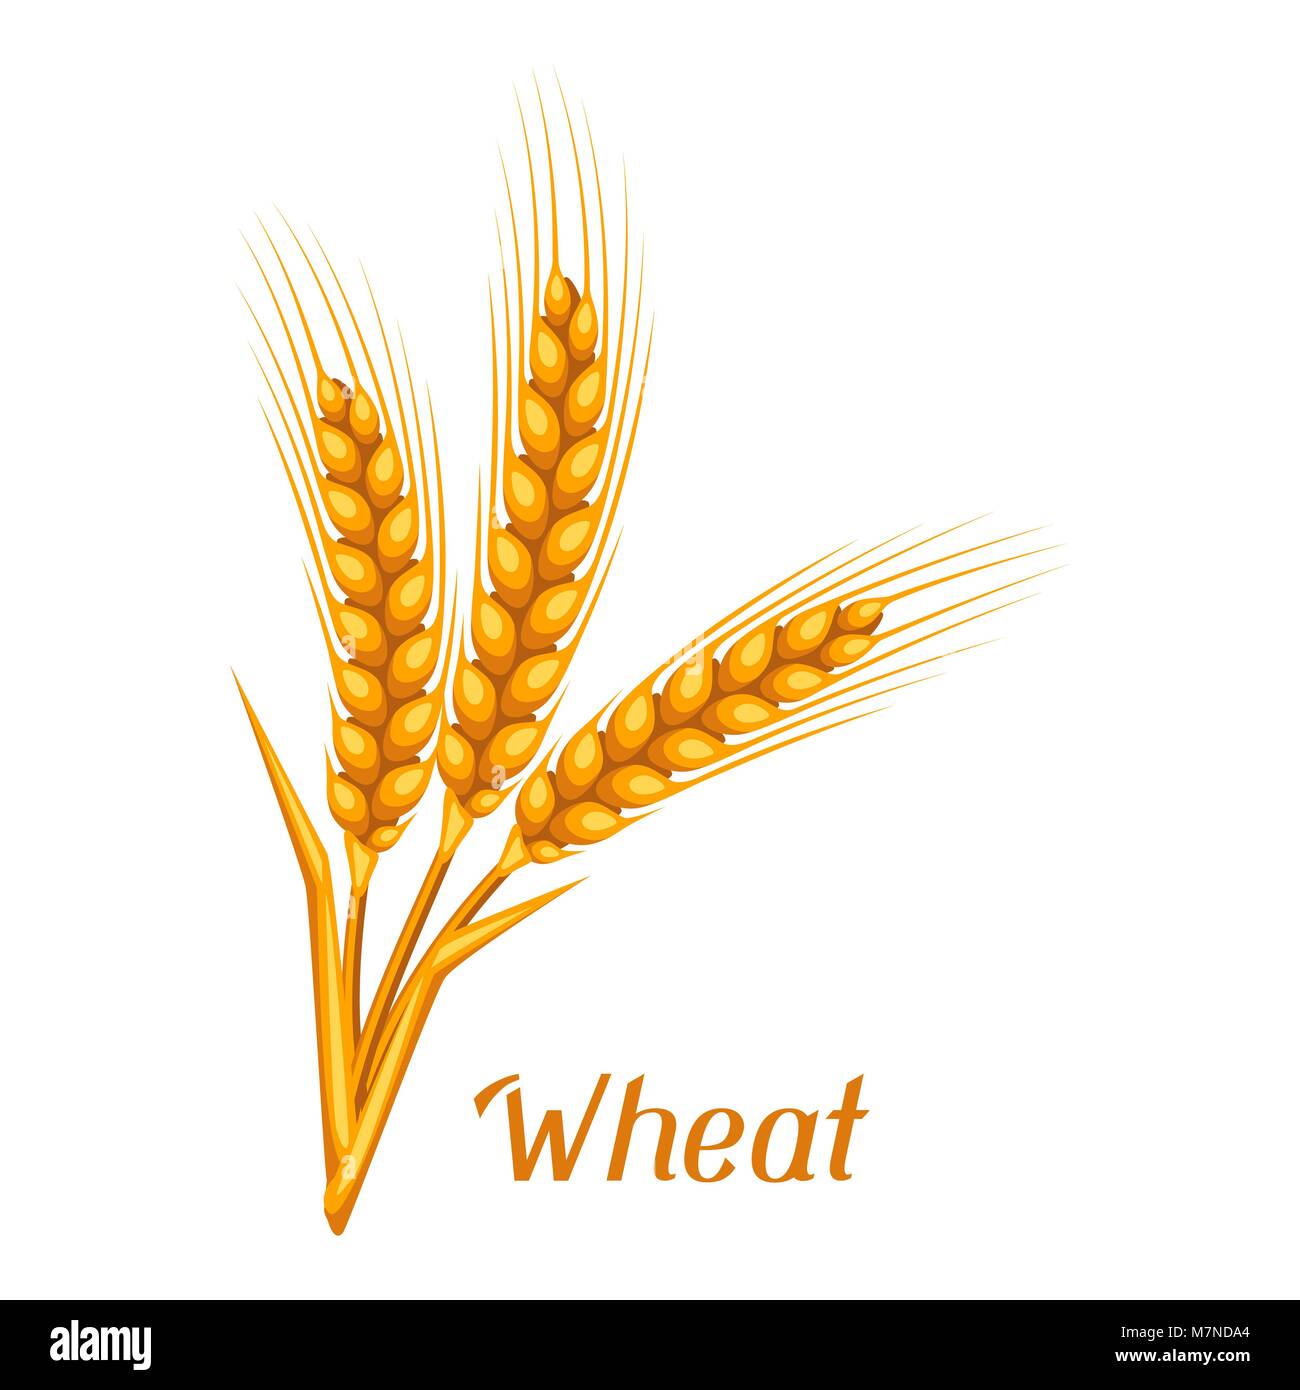 Tas de blé, d'orge ou de seigle les oreilles. Droit agricole pour la décoration d'emballage du pain, de la bière étiquettes, brochures et dépliants publicitaires Illustration de Vecteur